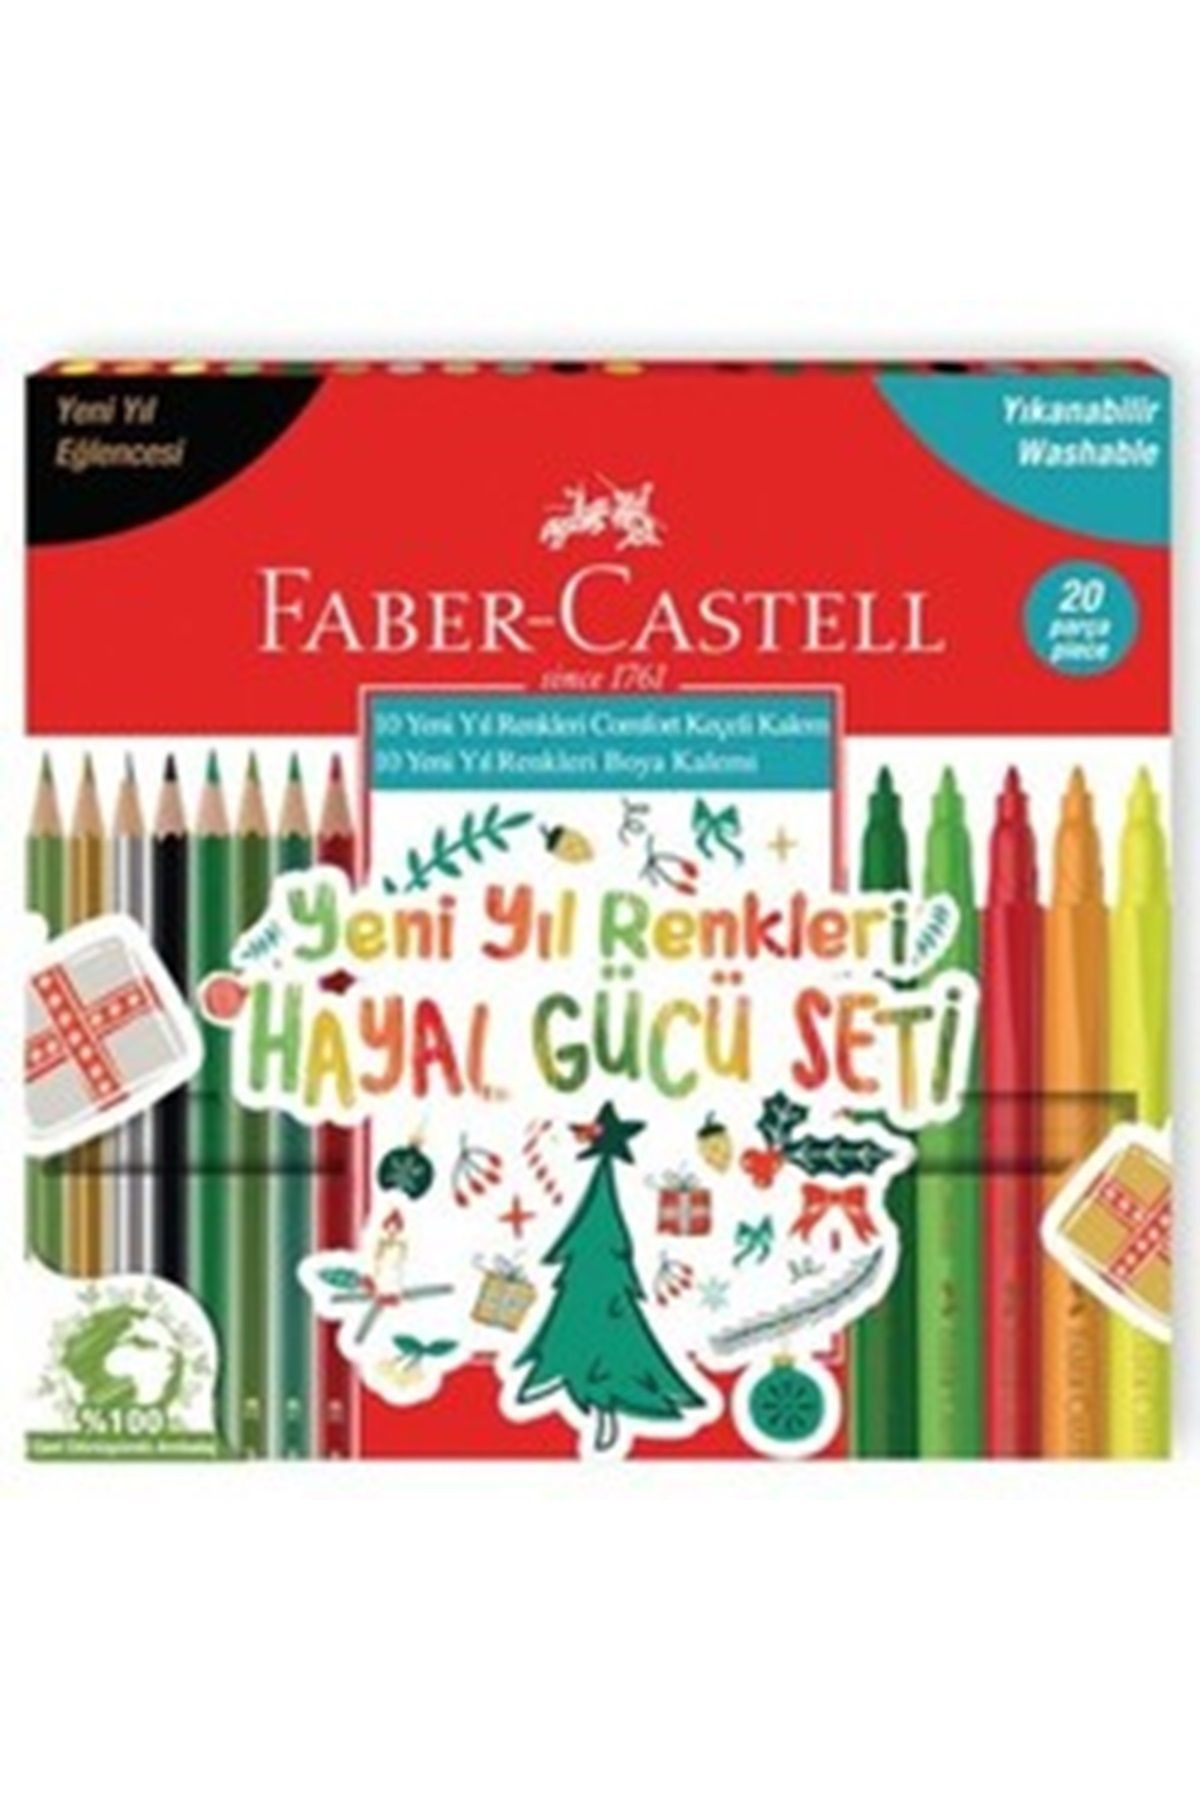 Faber Castell Yeni Yıl Renkleri 10 Kuru Boya 10 Keçeli Boya 20li